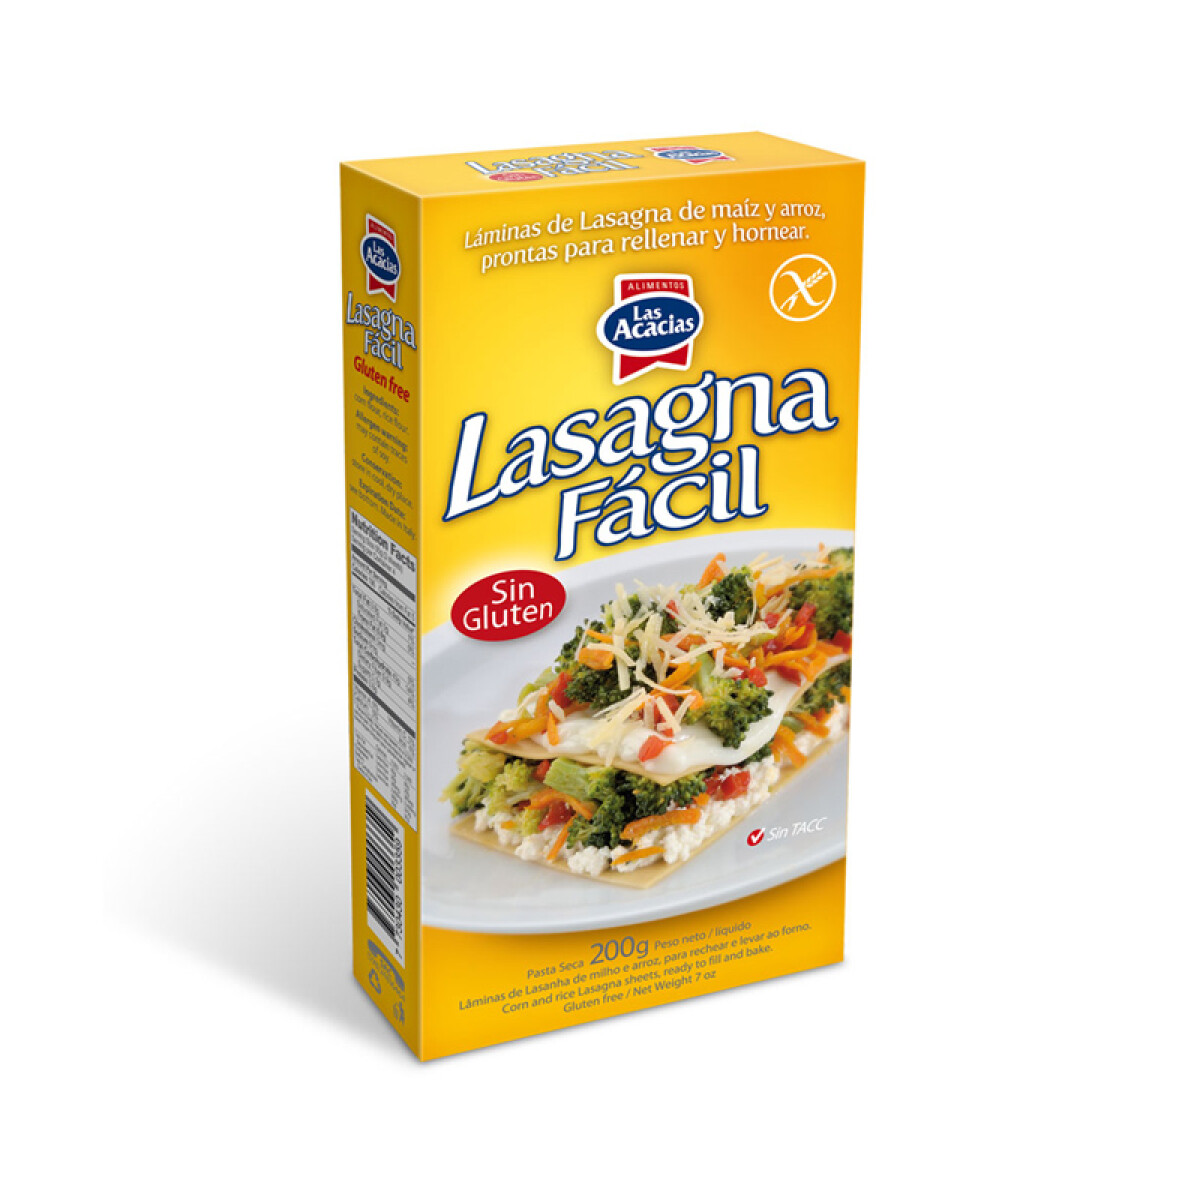 Lasagna facil s/gluten Las Acacias 